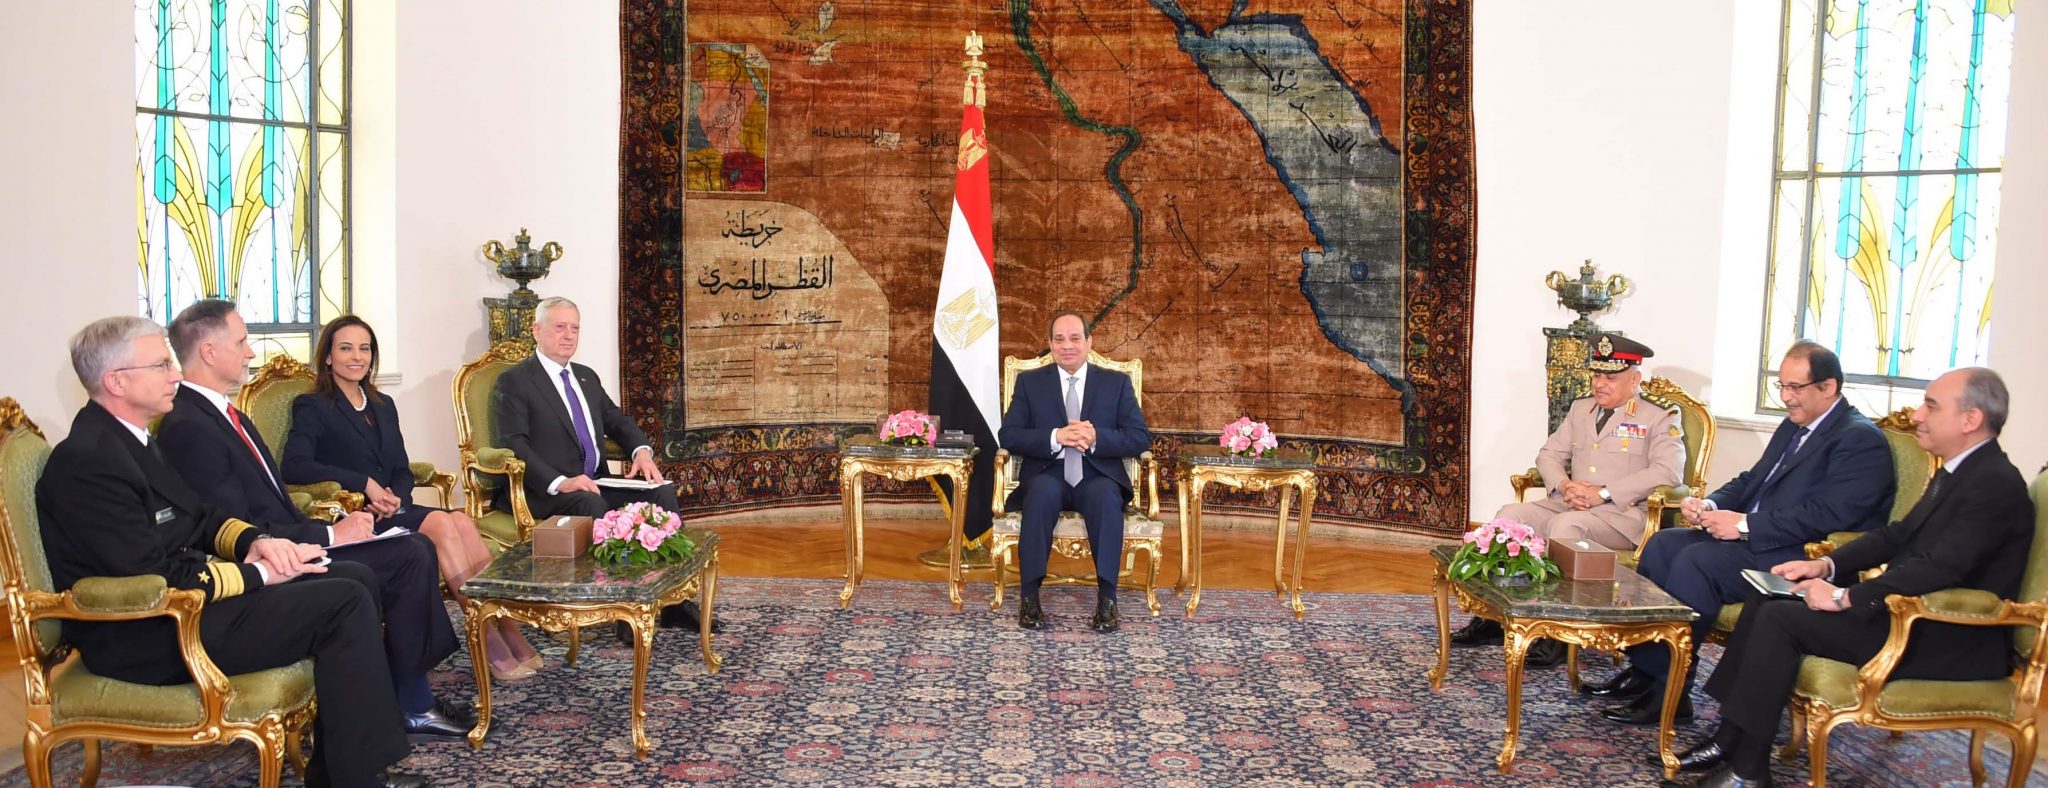   صور| وزير الدفاع الأمريكي: مصر تدعم الاستقرار في الشرق الأوسط